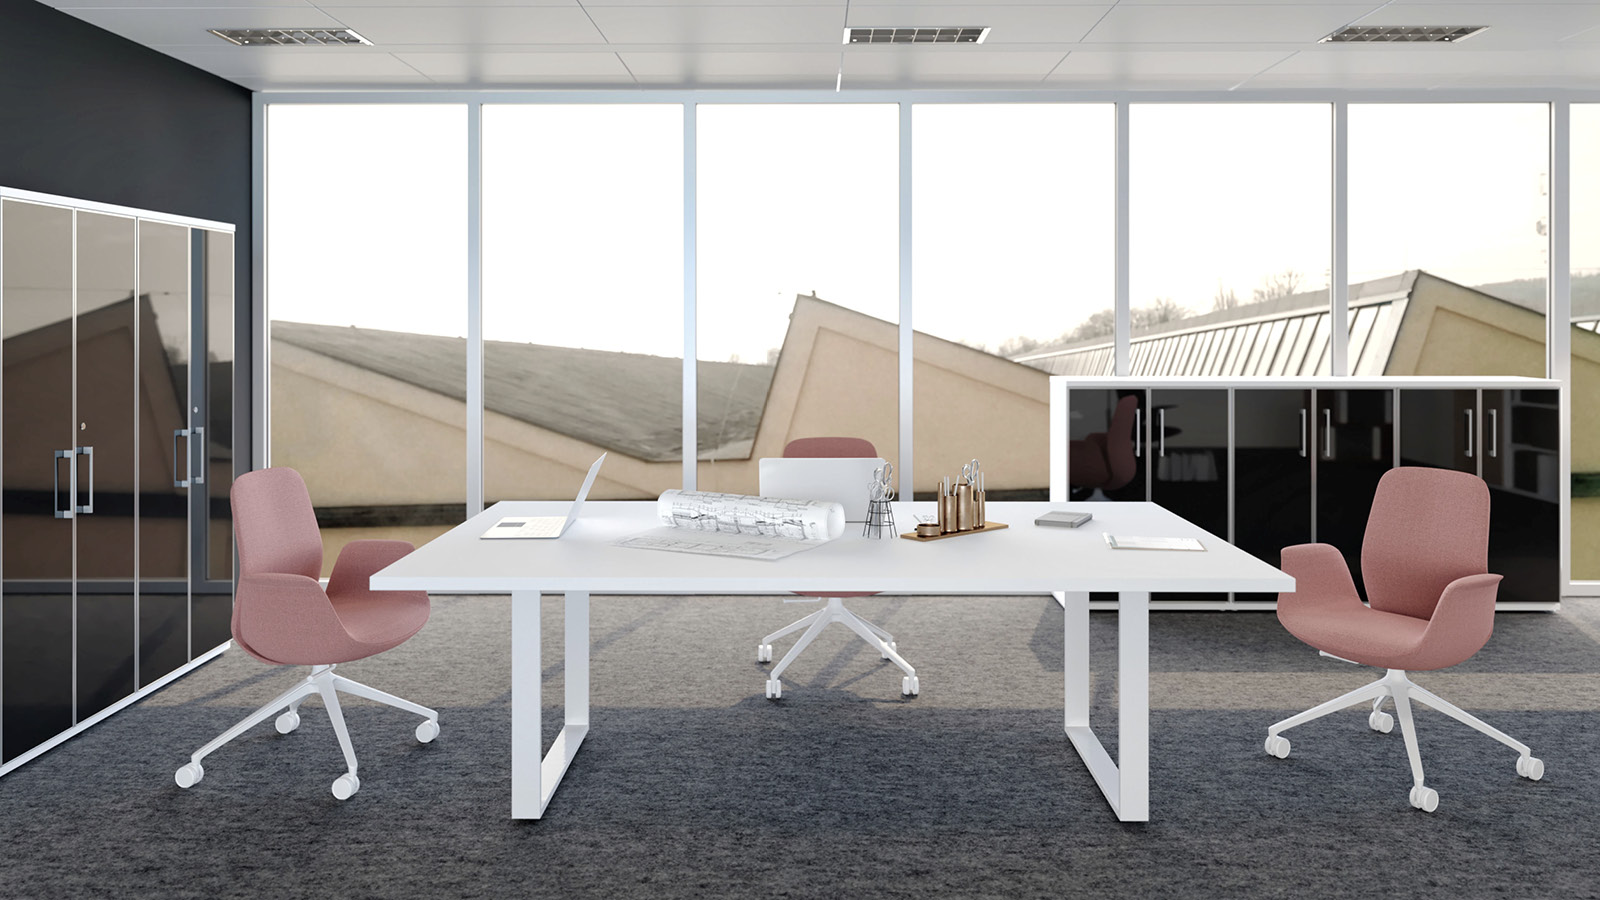 Przestrzenny, biały stół na zamkniętym stelażu umieszczony w sali spotkań. Całość została uzupełniona o fotele kubełkowe.